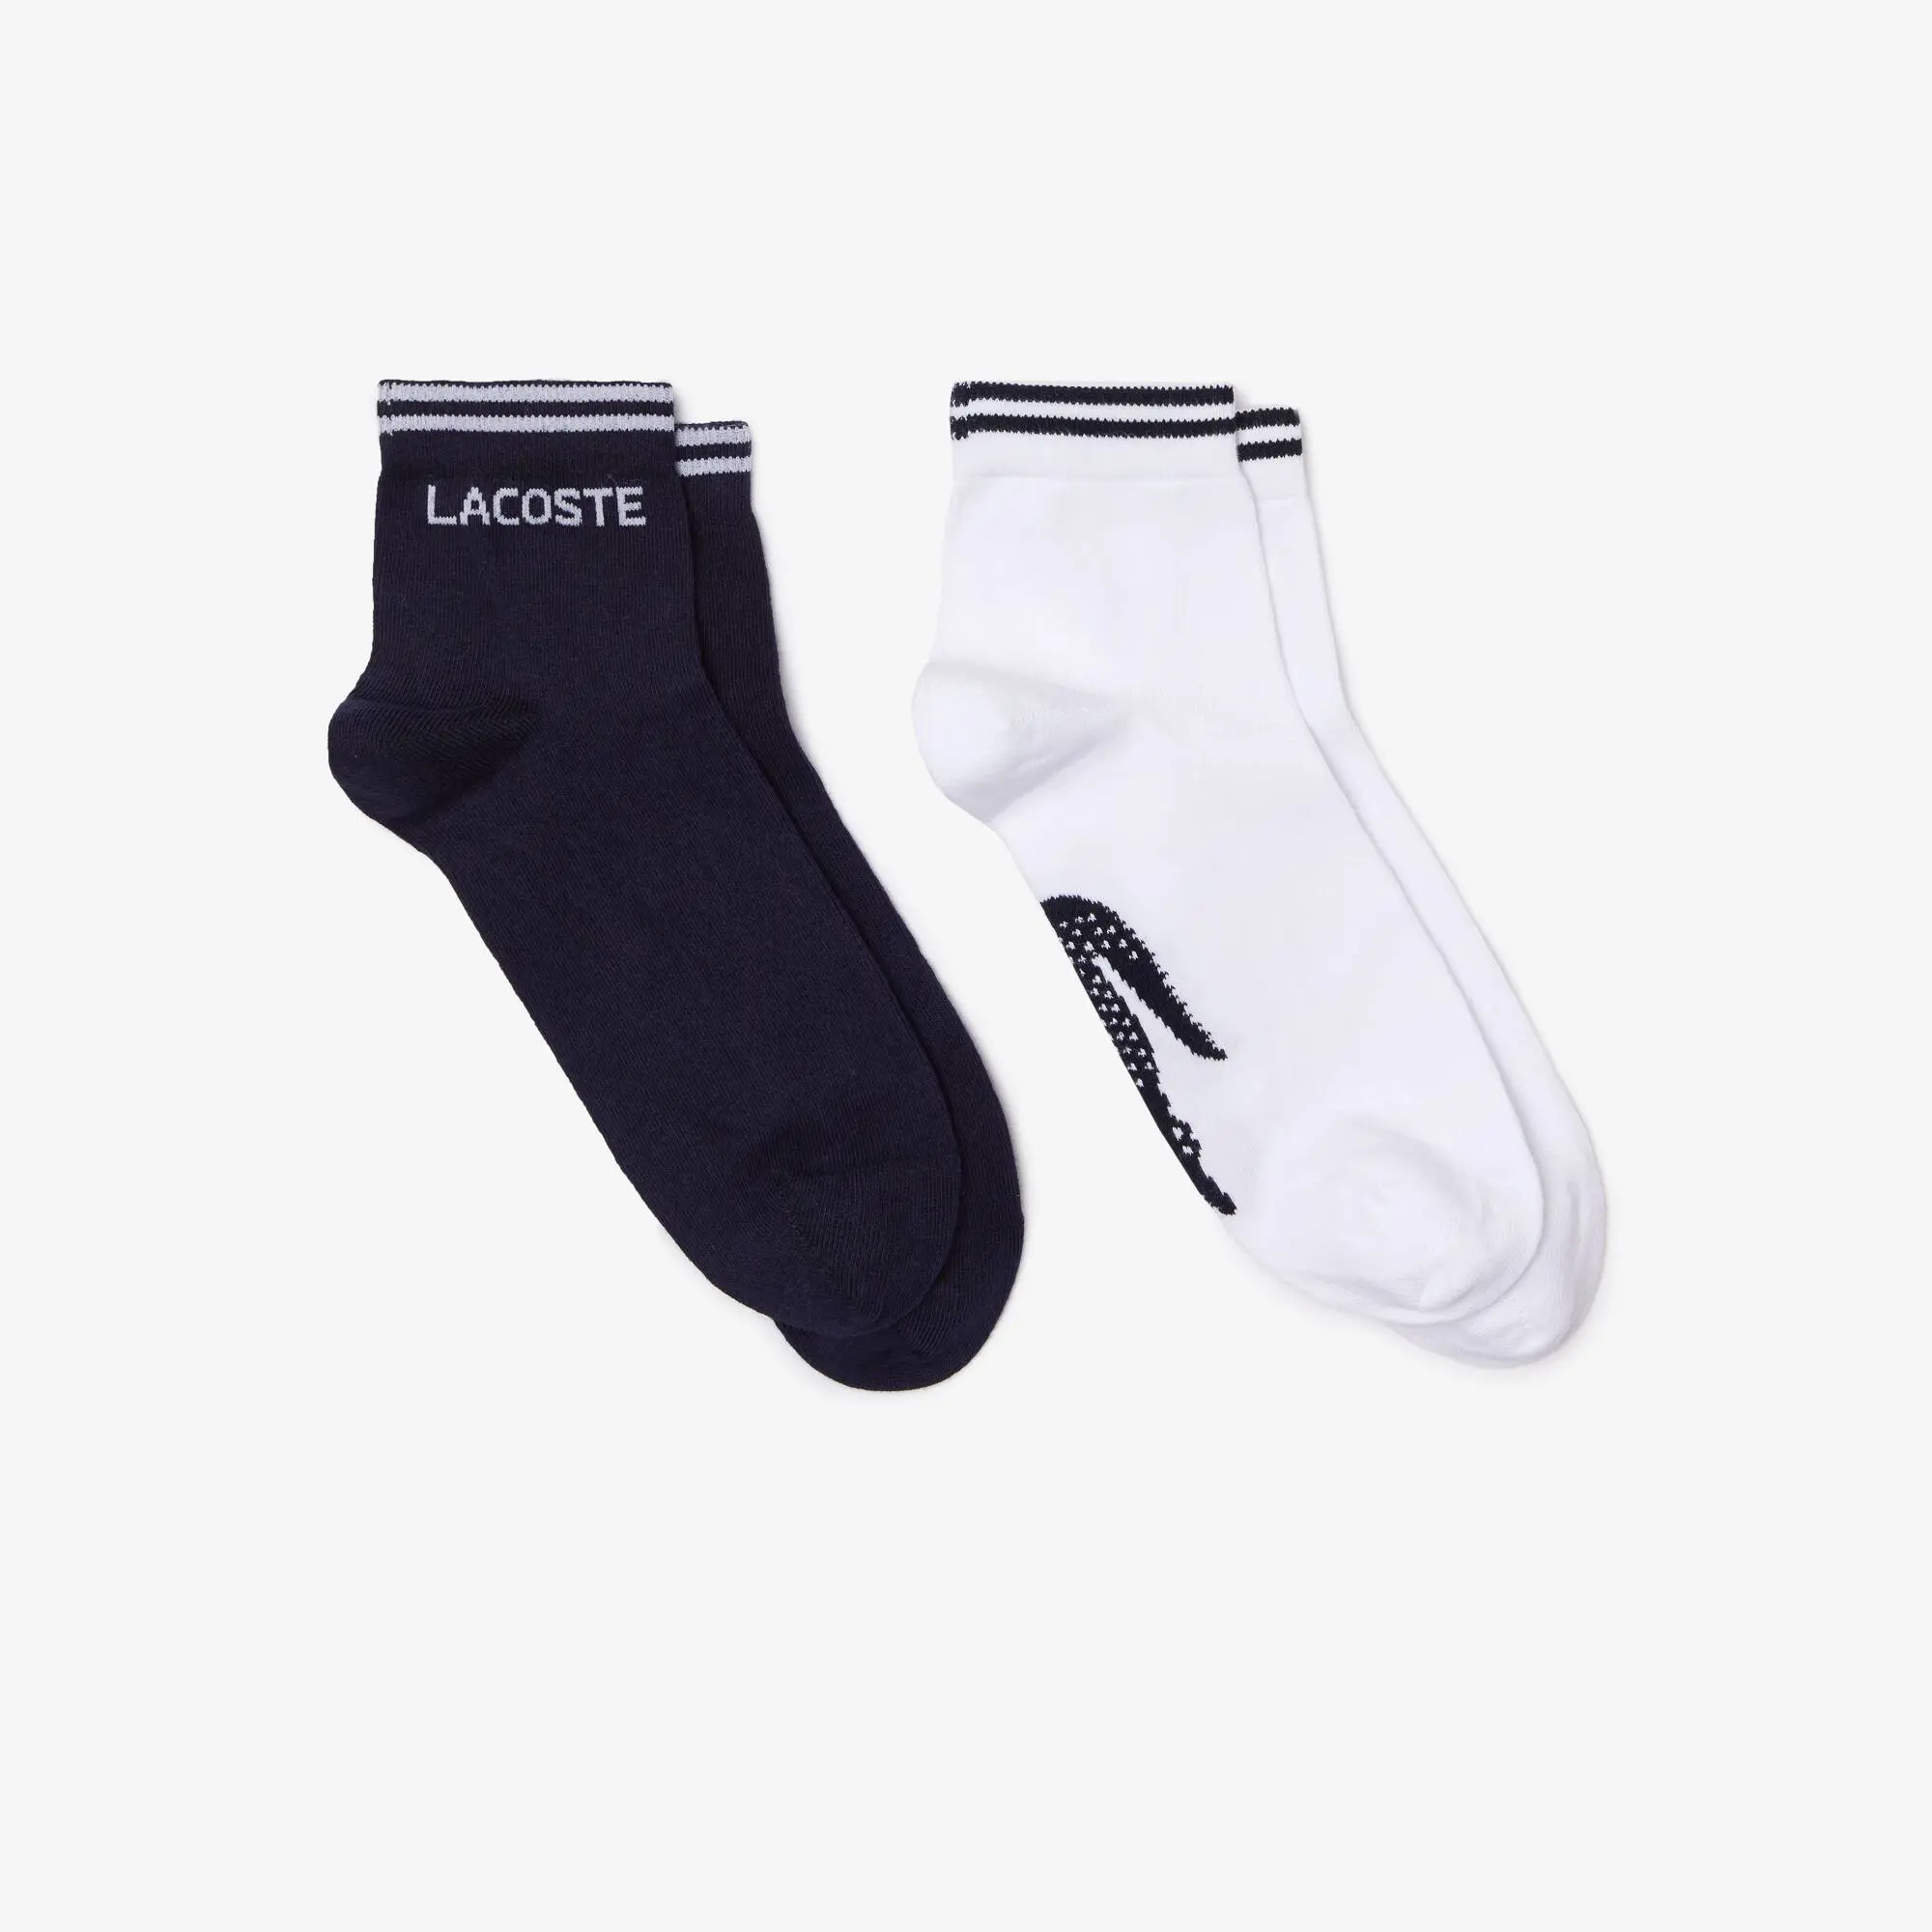 Lacoste Pack de 2 pares de calcetines de hombre Lacoste SPORT de corte bajo en algodón. 1